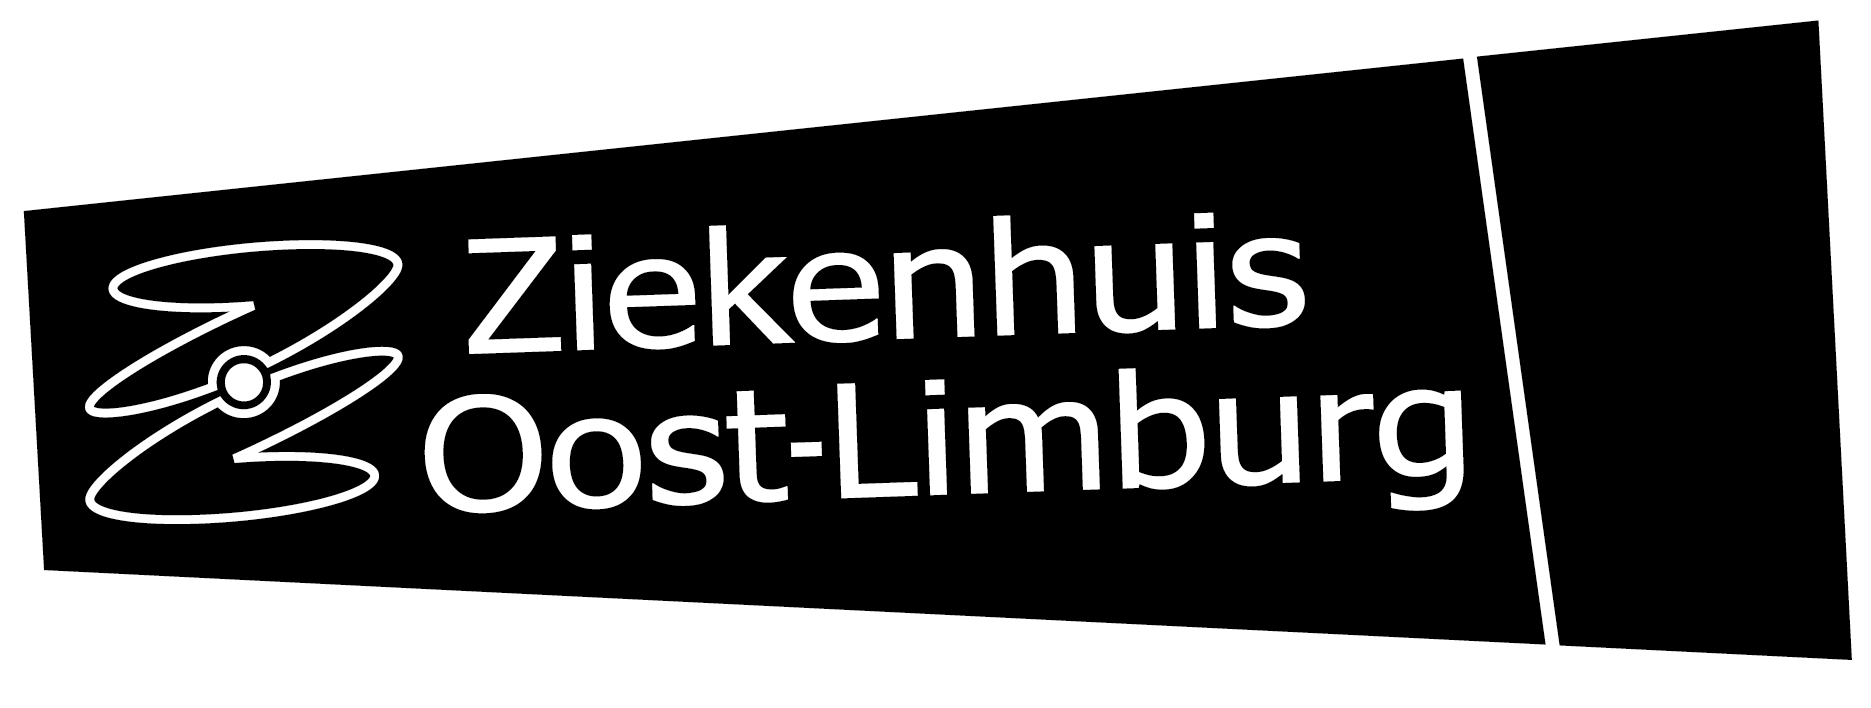 Logo klant van White Light: Ziekenhuis Oost-Limburg